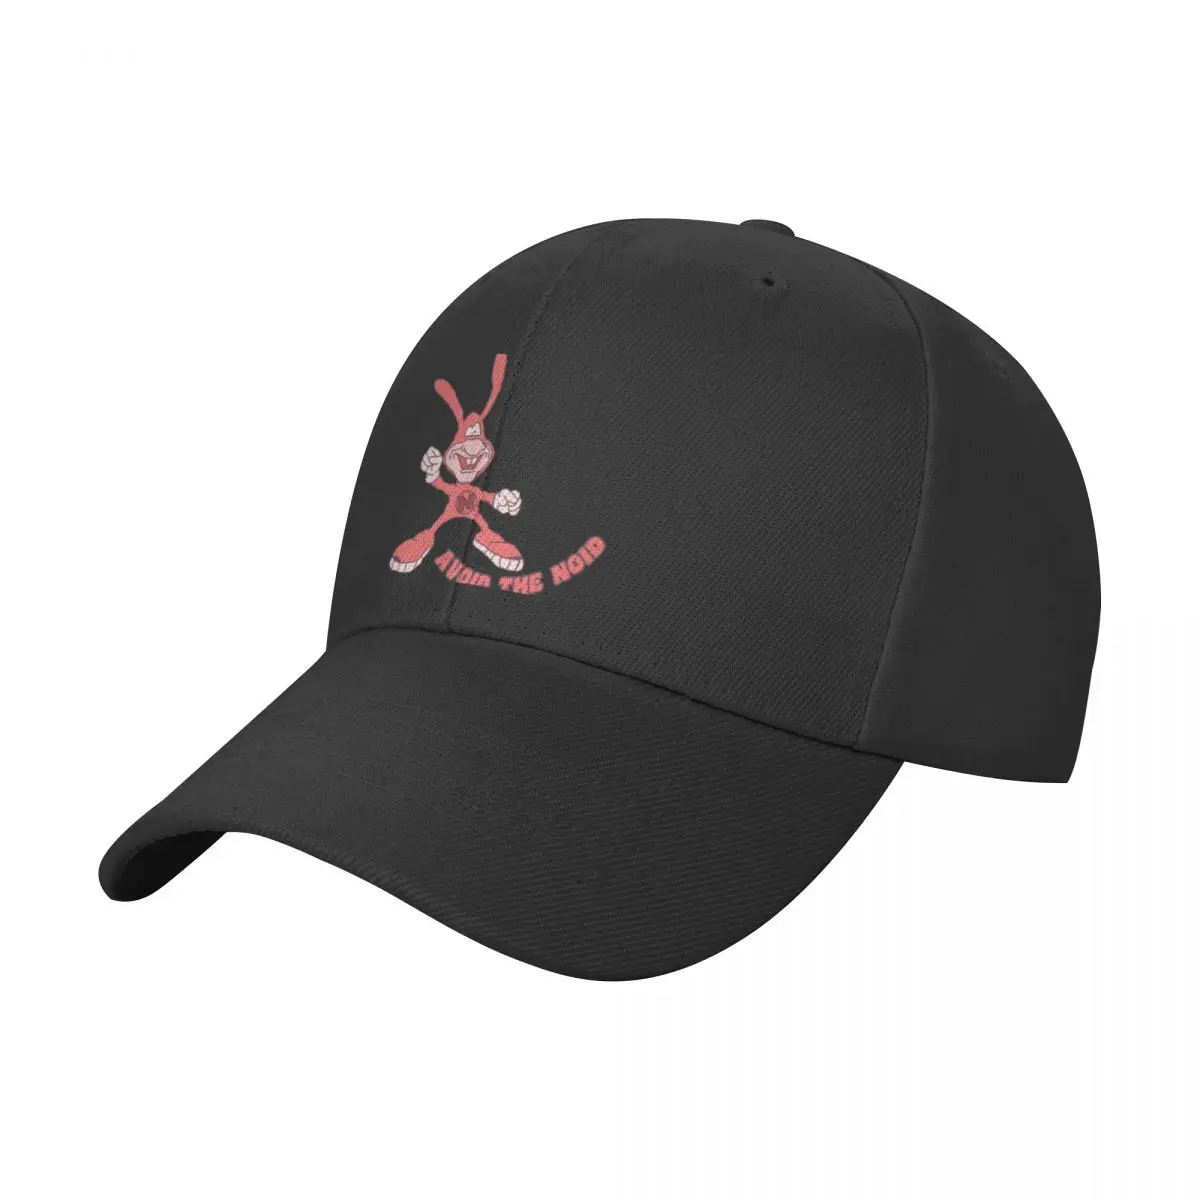 

Avoid The Noid Baseball Cap custom Hat Hood Bobble Hat Trucker Cap Trucker Hats For Men Women's